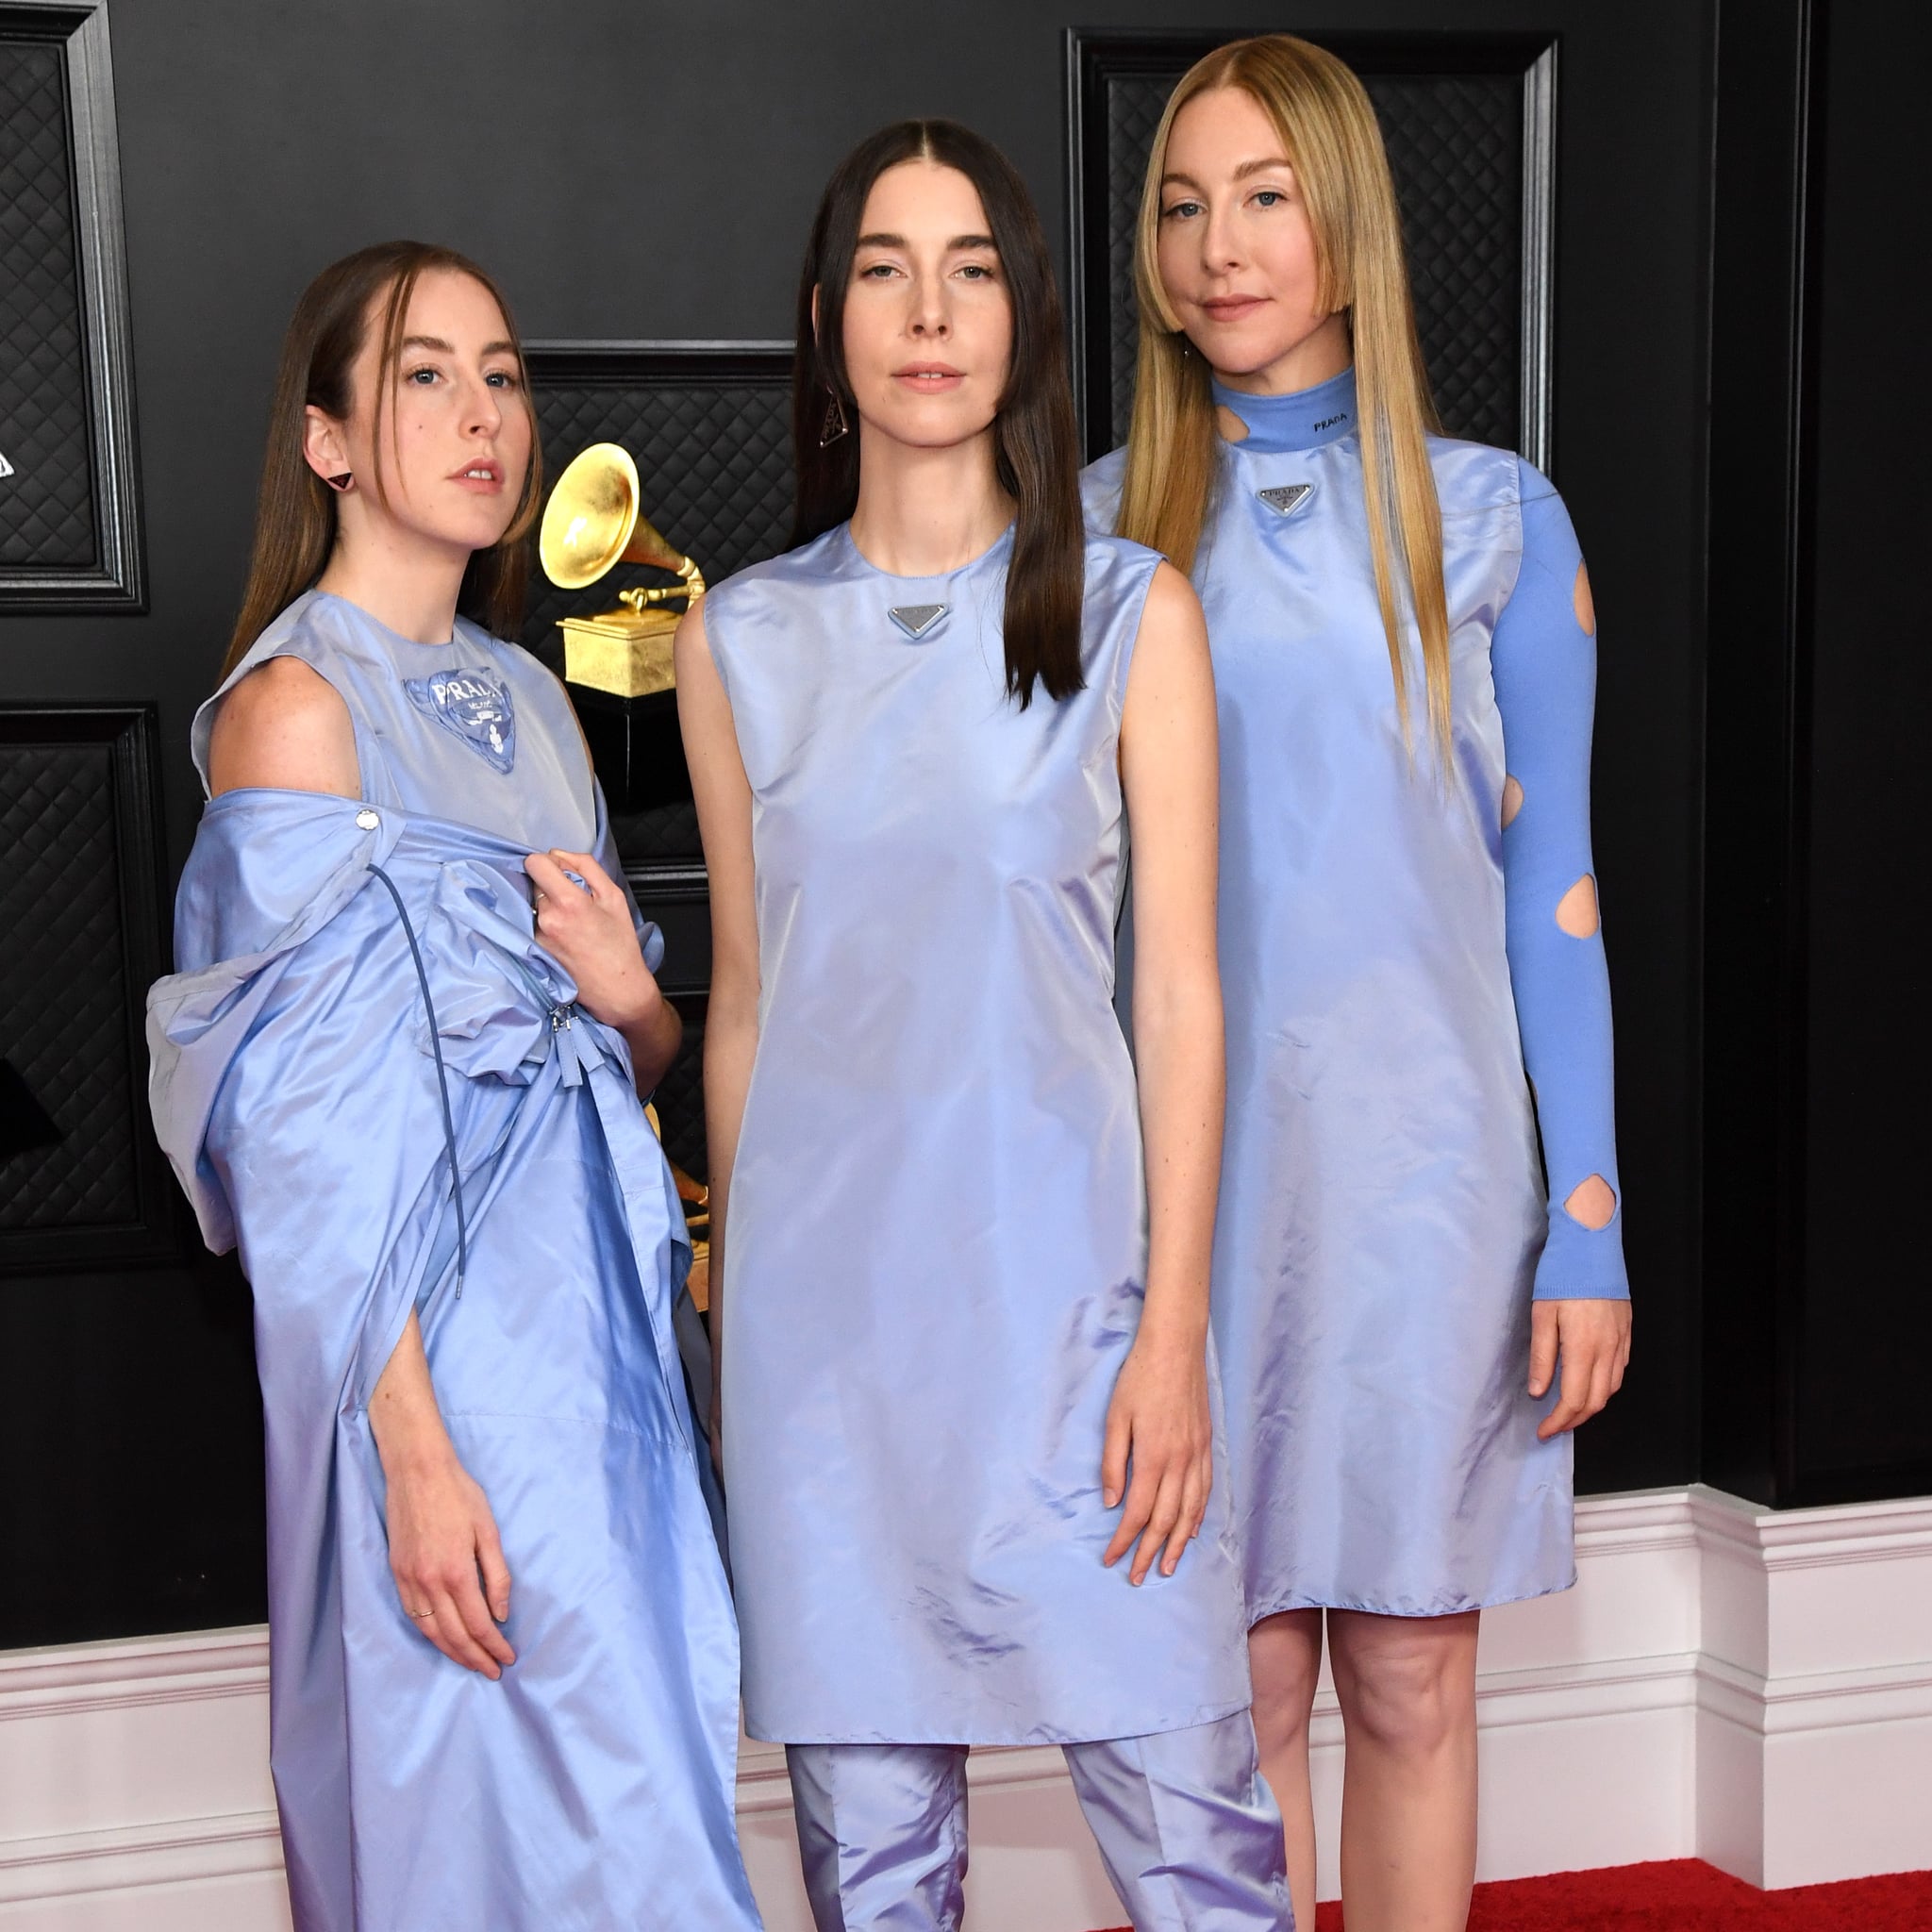 Haim's Blue Prada Outfits at the 2021 Grammys